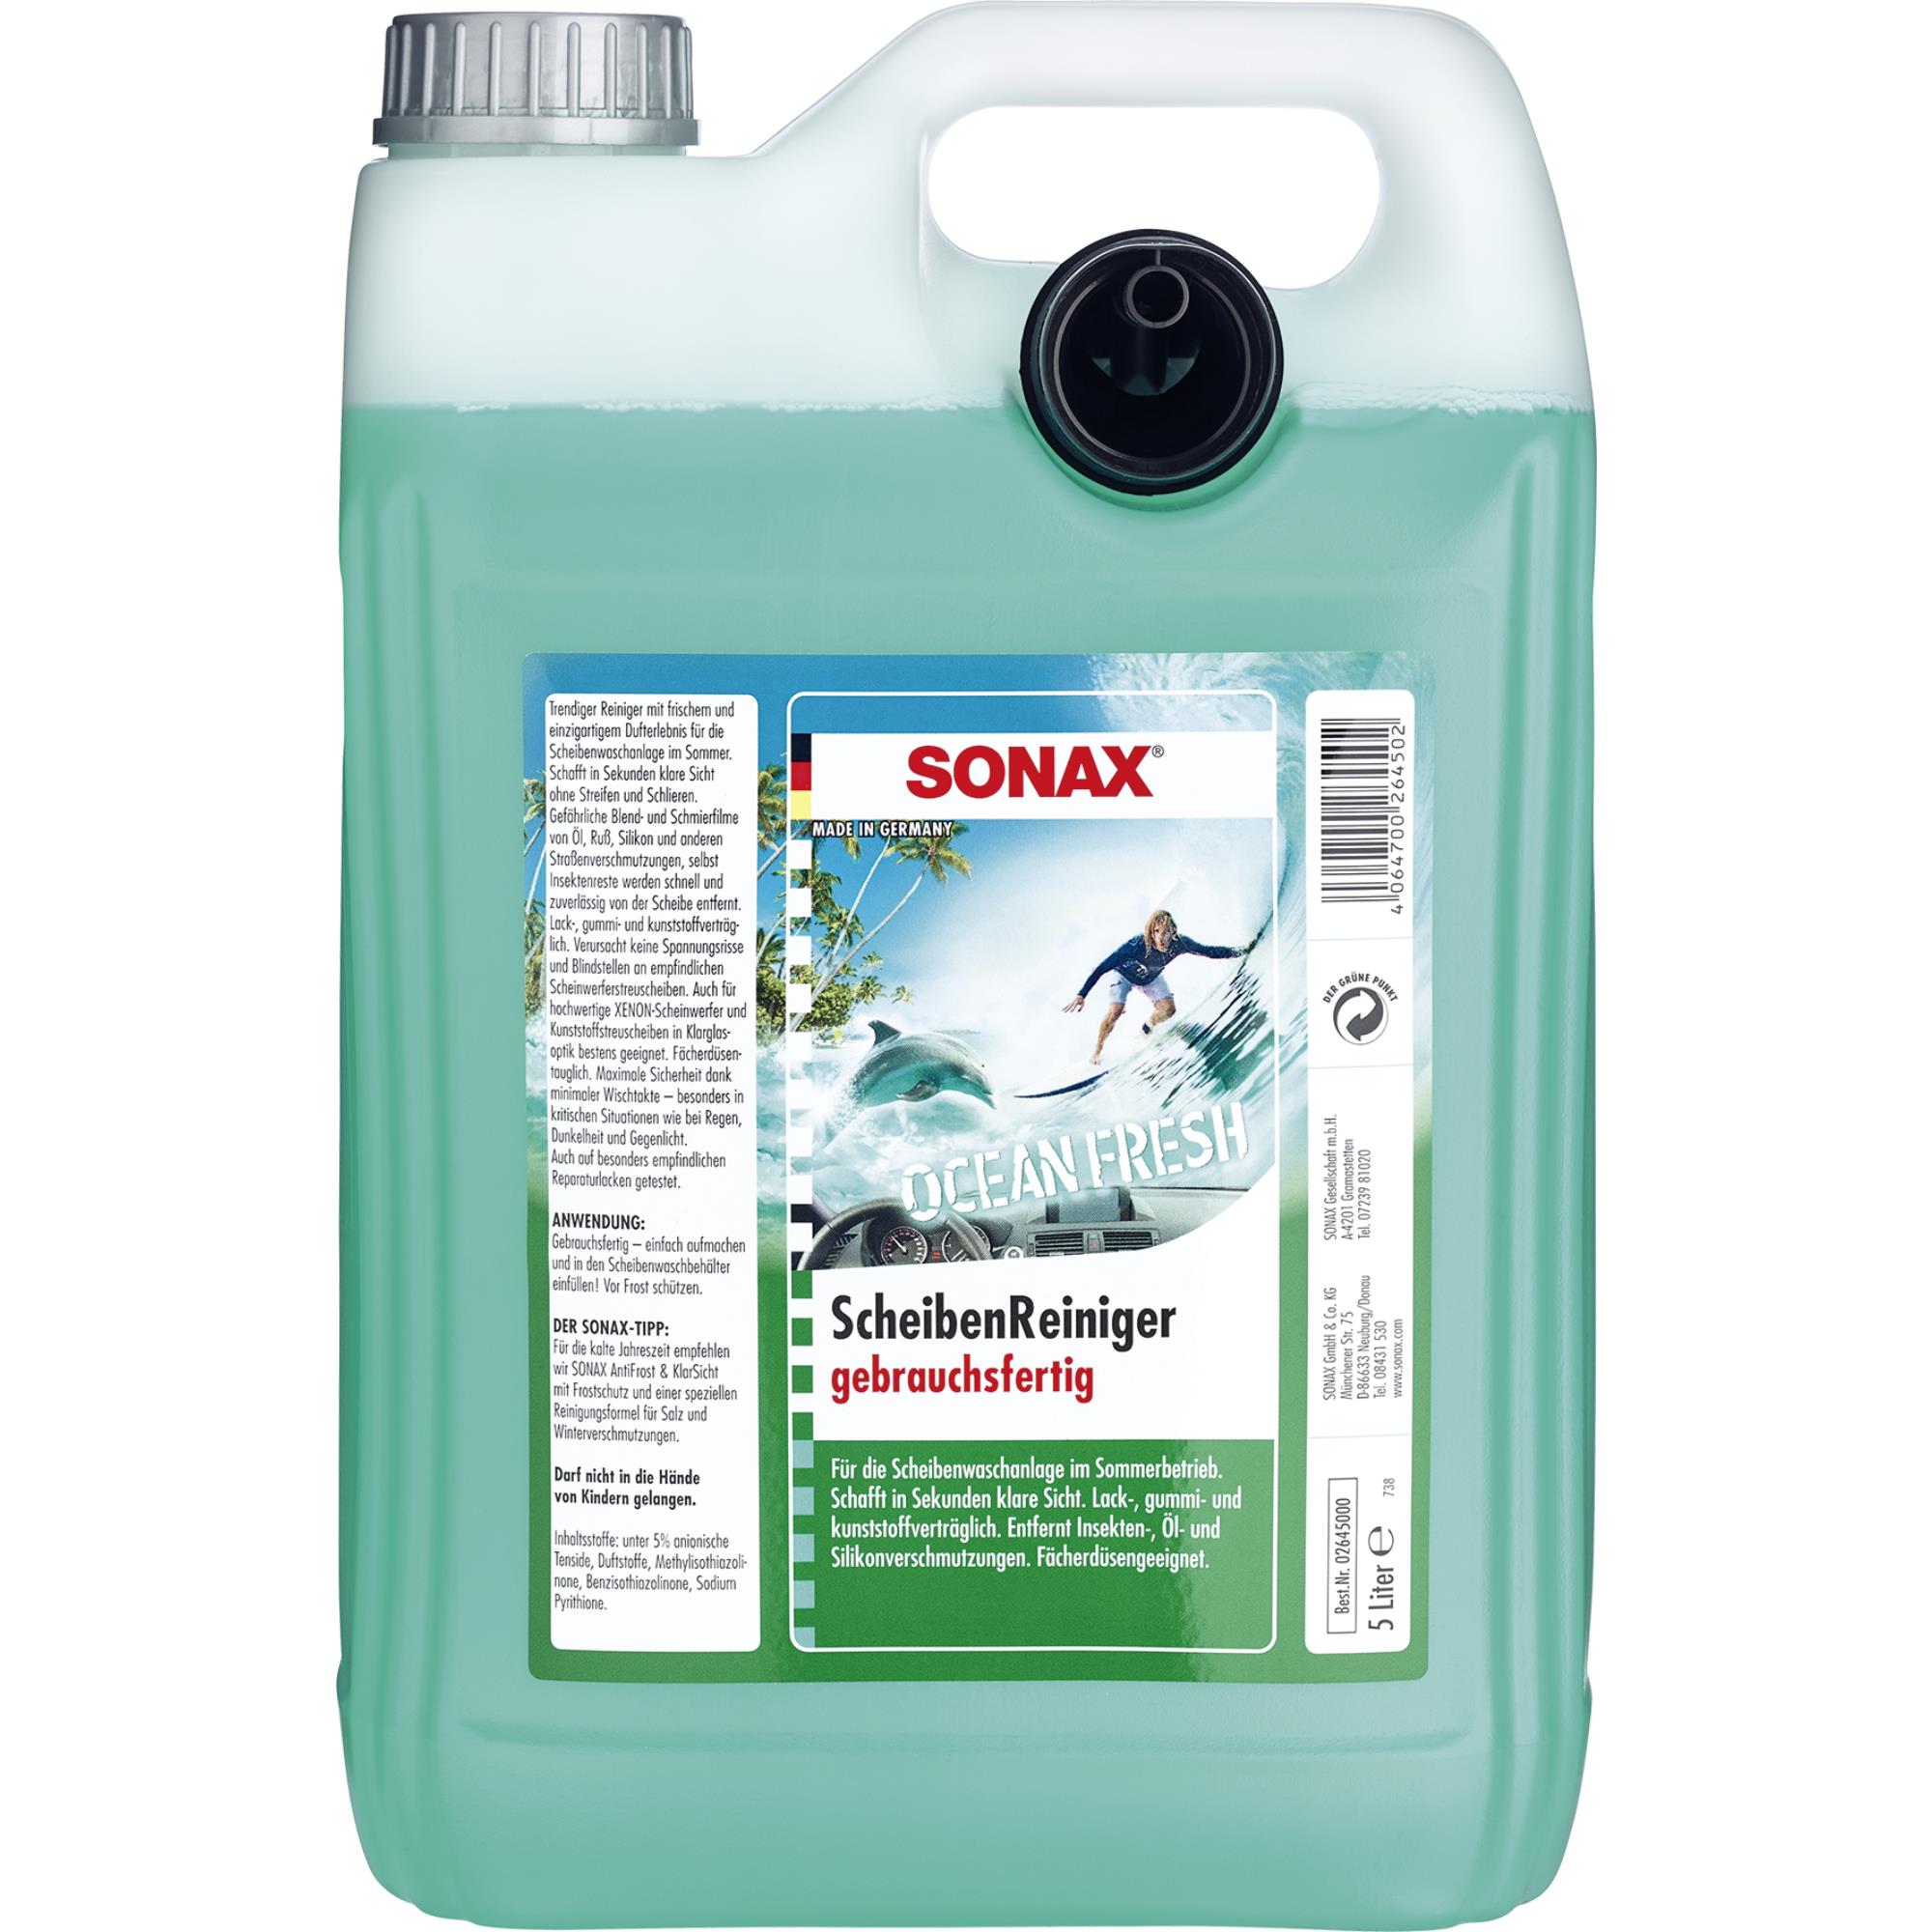 SONAX 02645000 ScheibenReiniger gebrauchsfertig Ocean-Fresh 5 Liter